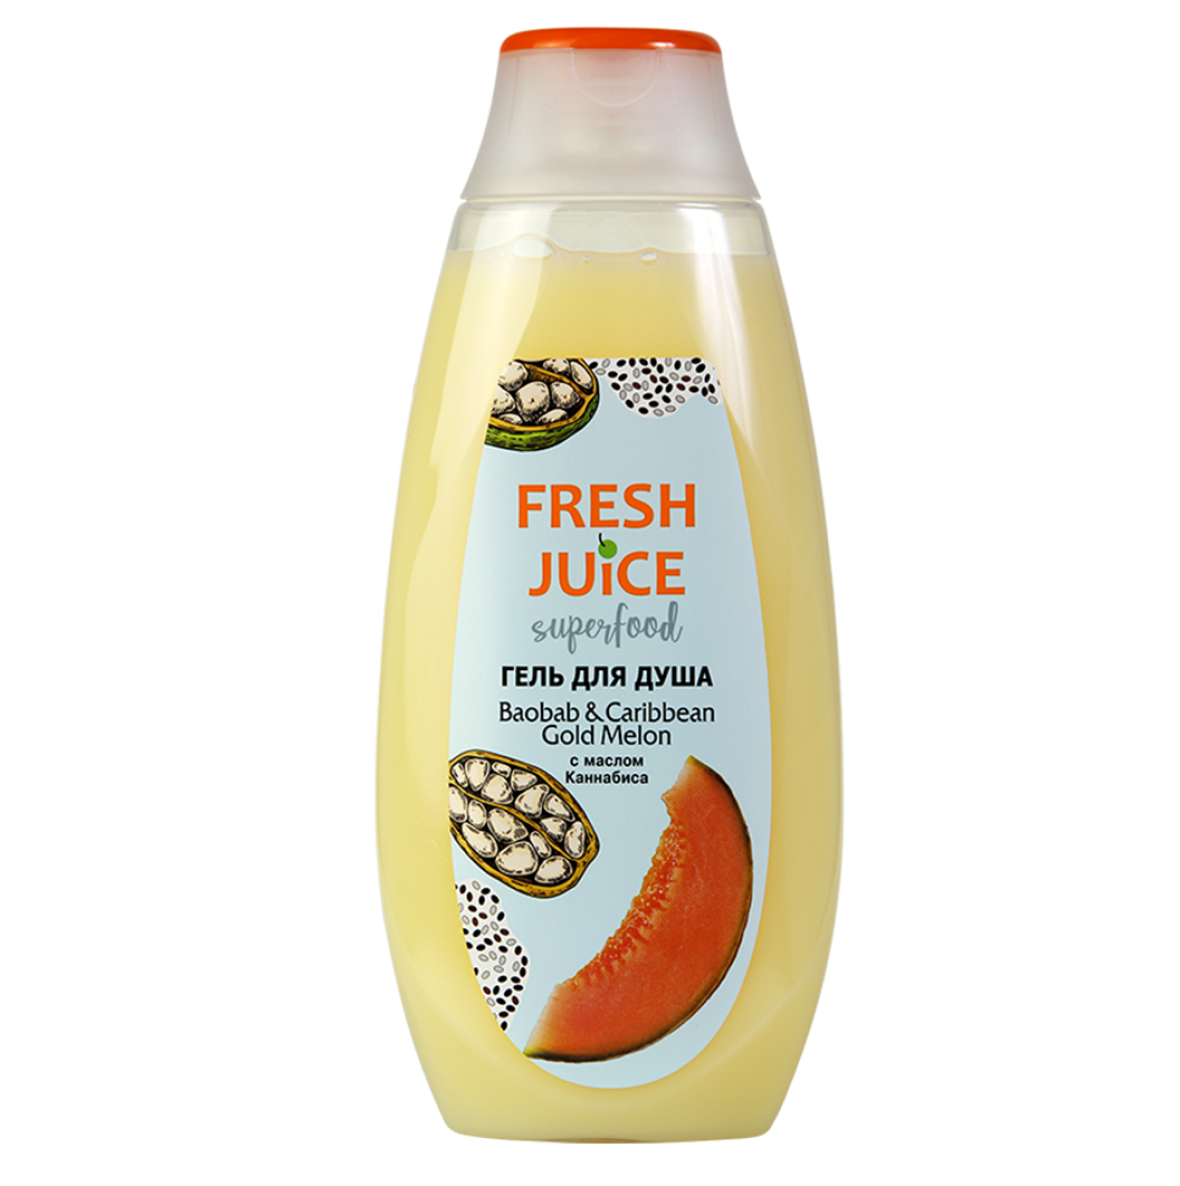 Гель для душа Fresh Juice Superfood Baobab&Caribbean Gold Melon, 400 мл - фото 1